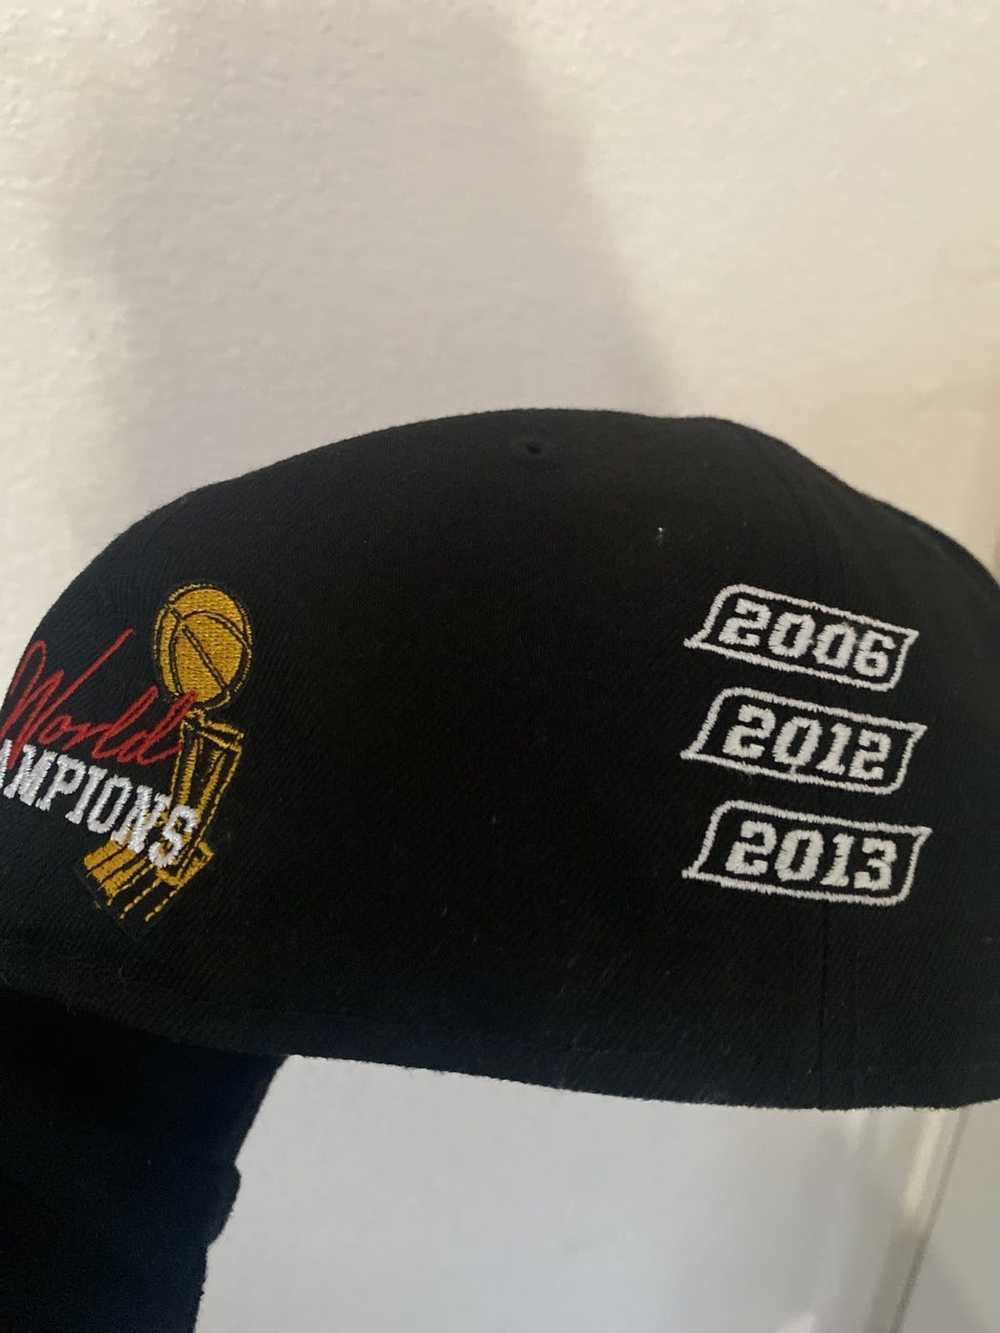 NBA × New Era New era x Miami heat 3peat hat - image 3